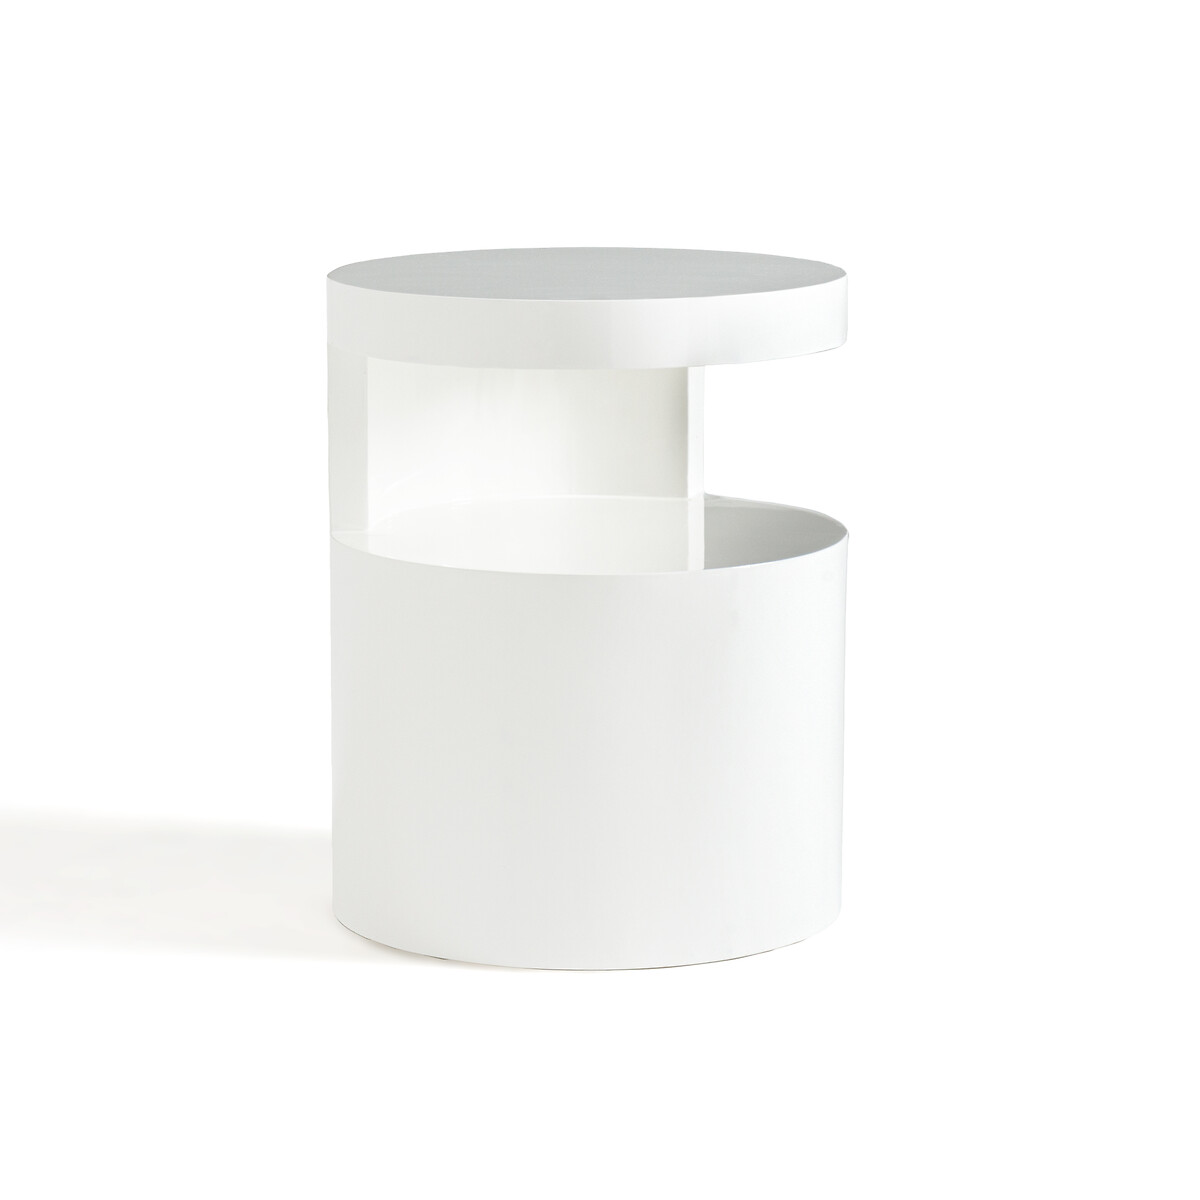 Столик прикроватный блестящий цилиндрической формы Newark единый размер белый прикроватный столик простой современный стеклянный креативный светильник в скандинавском стиле для гостиной прикроватный угловой столи